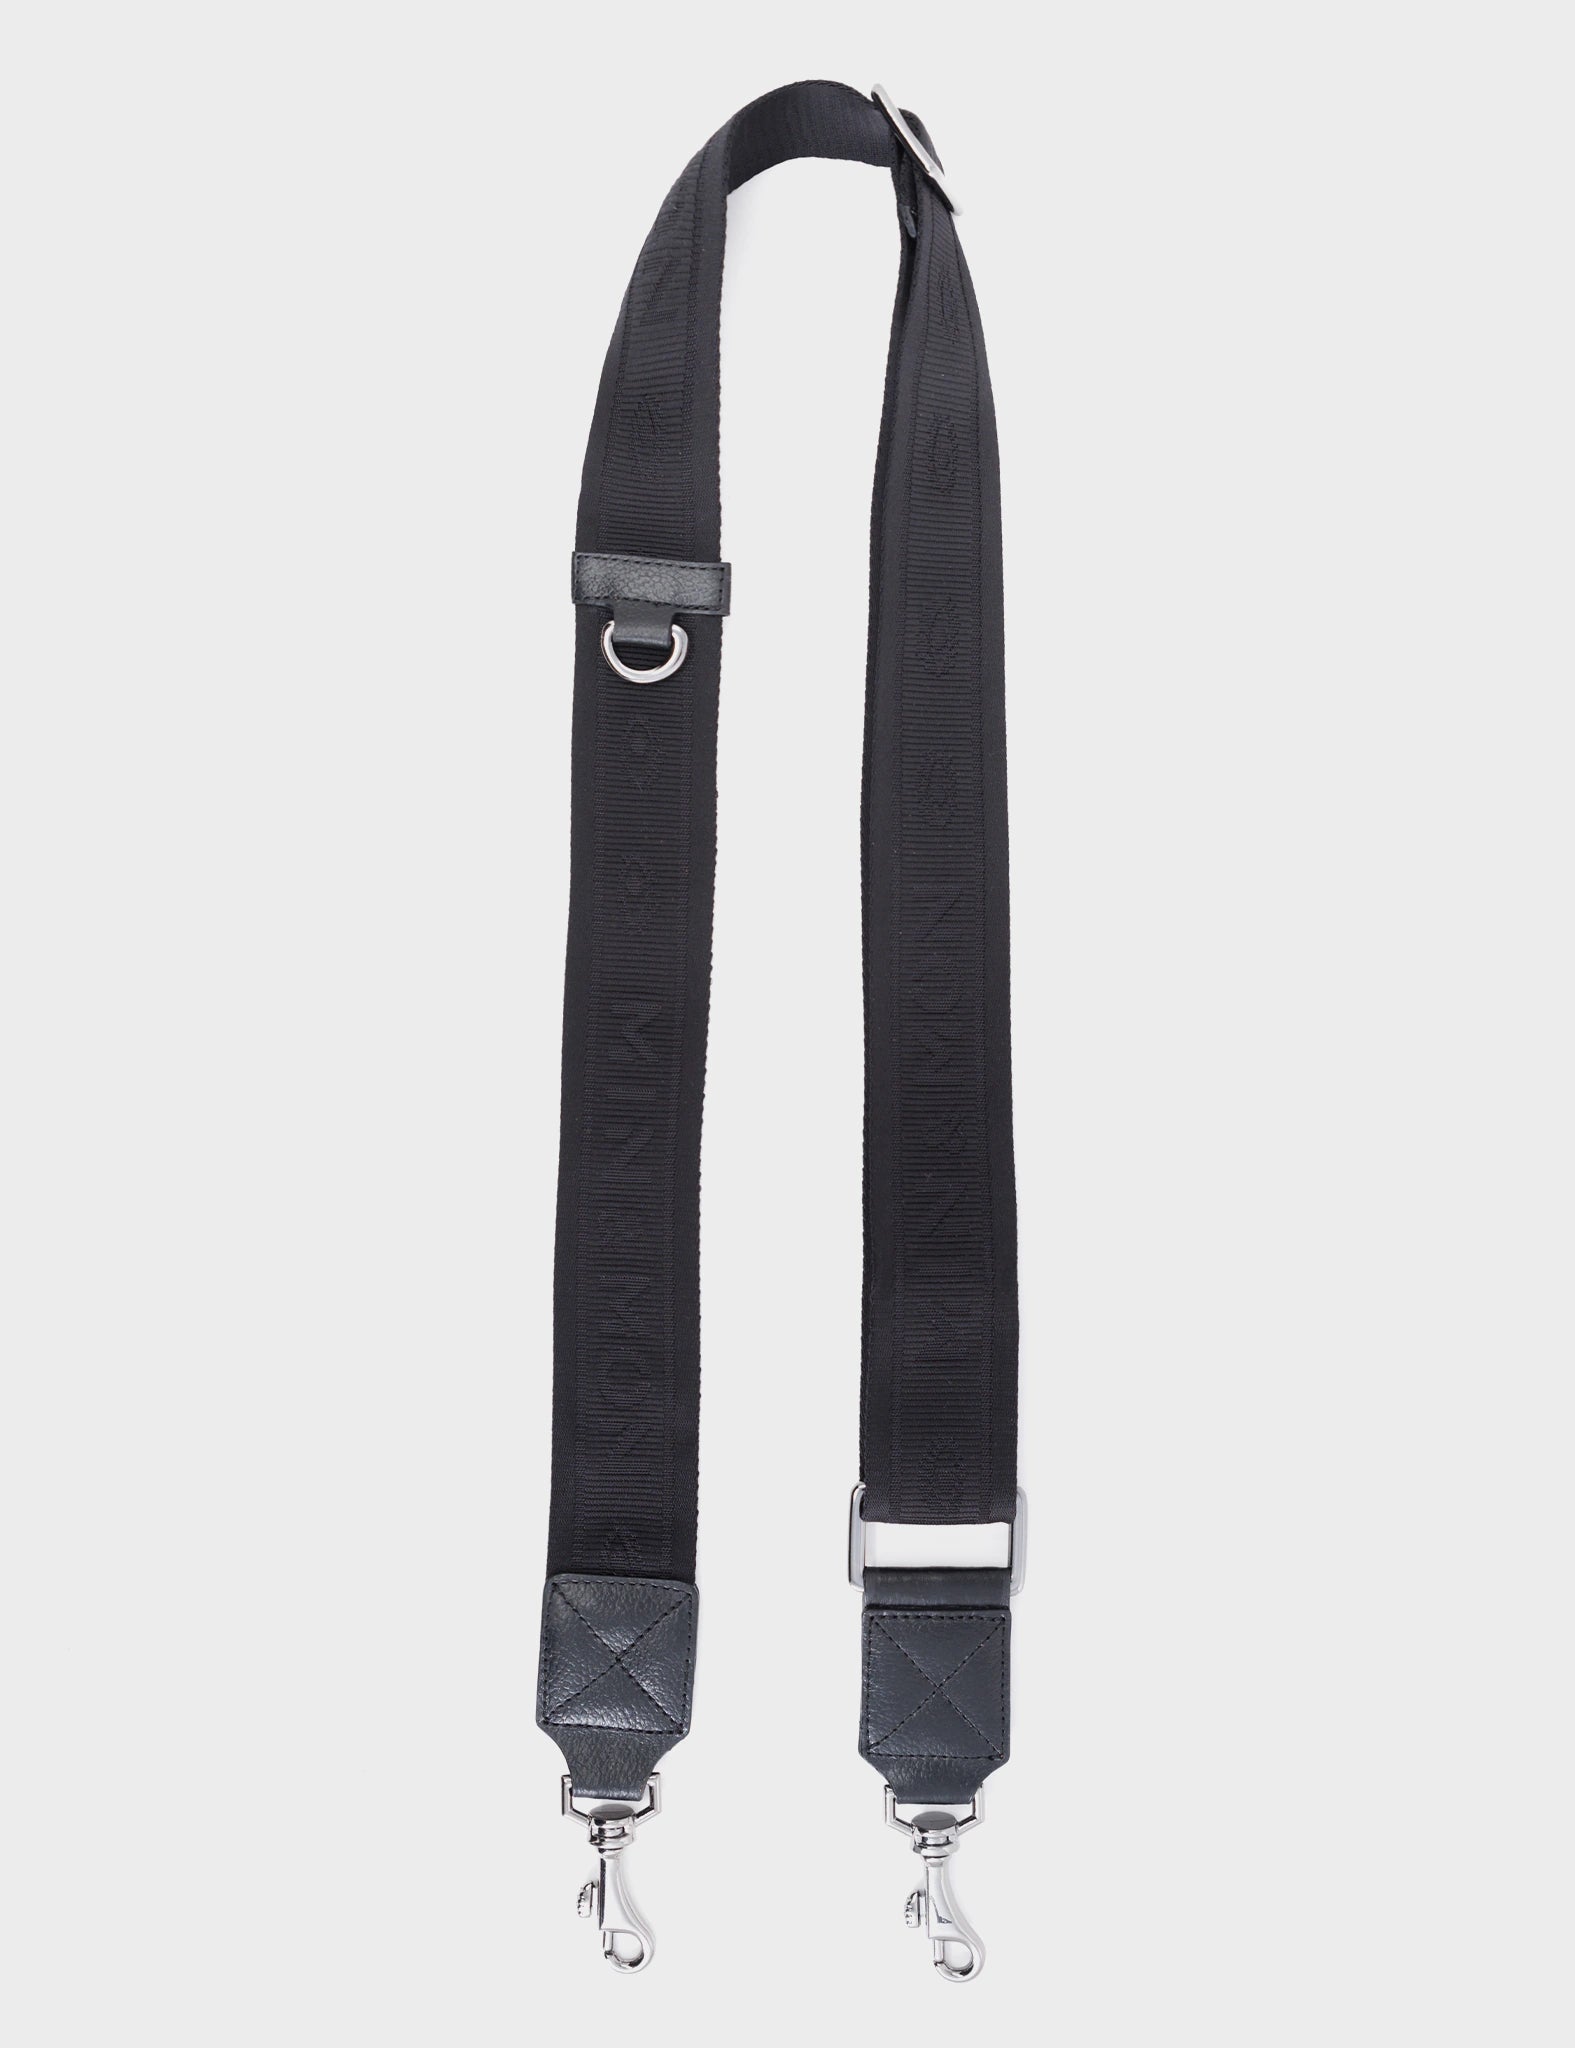 Detachable Crossbody Black Nylon Strap - All Over Eyes Design - Length 